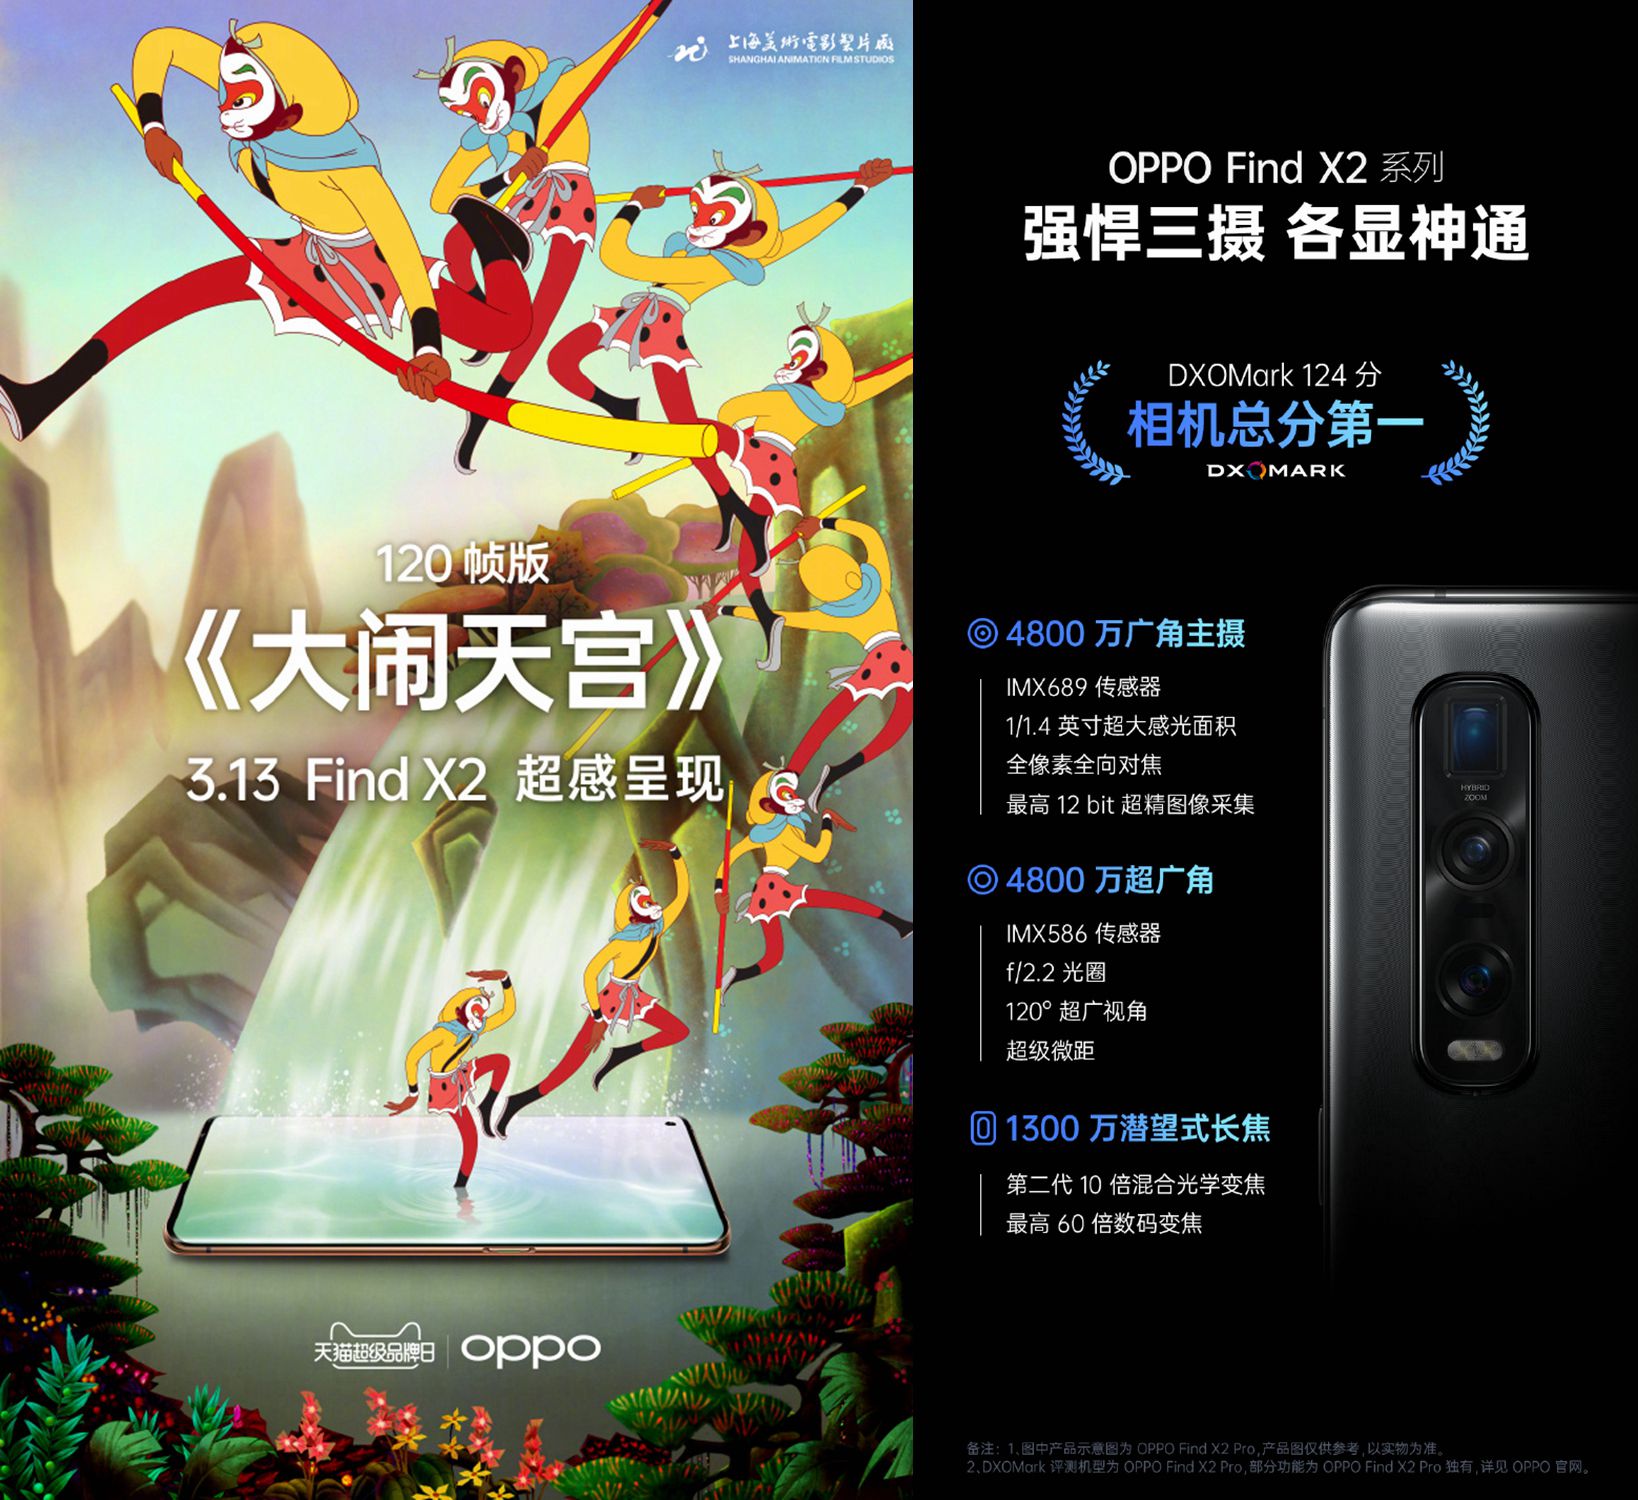 上海美影厂与OPPO将推出120帧版《大闹天宫》